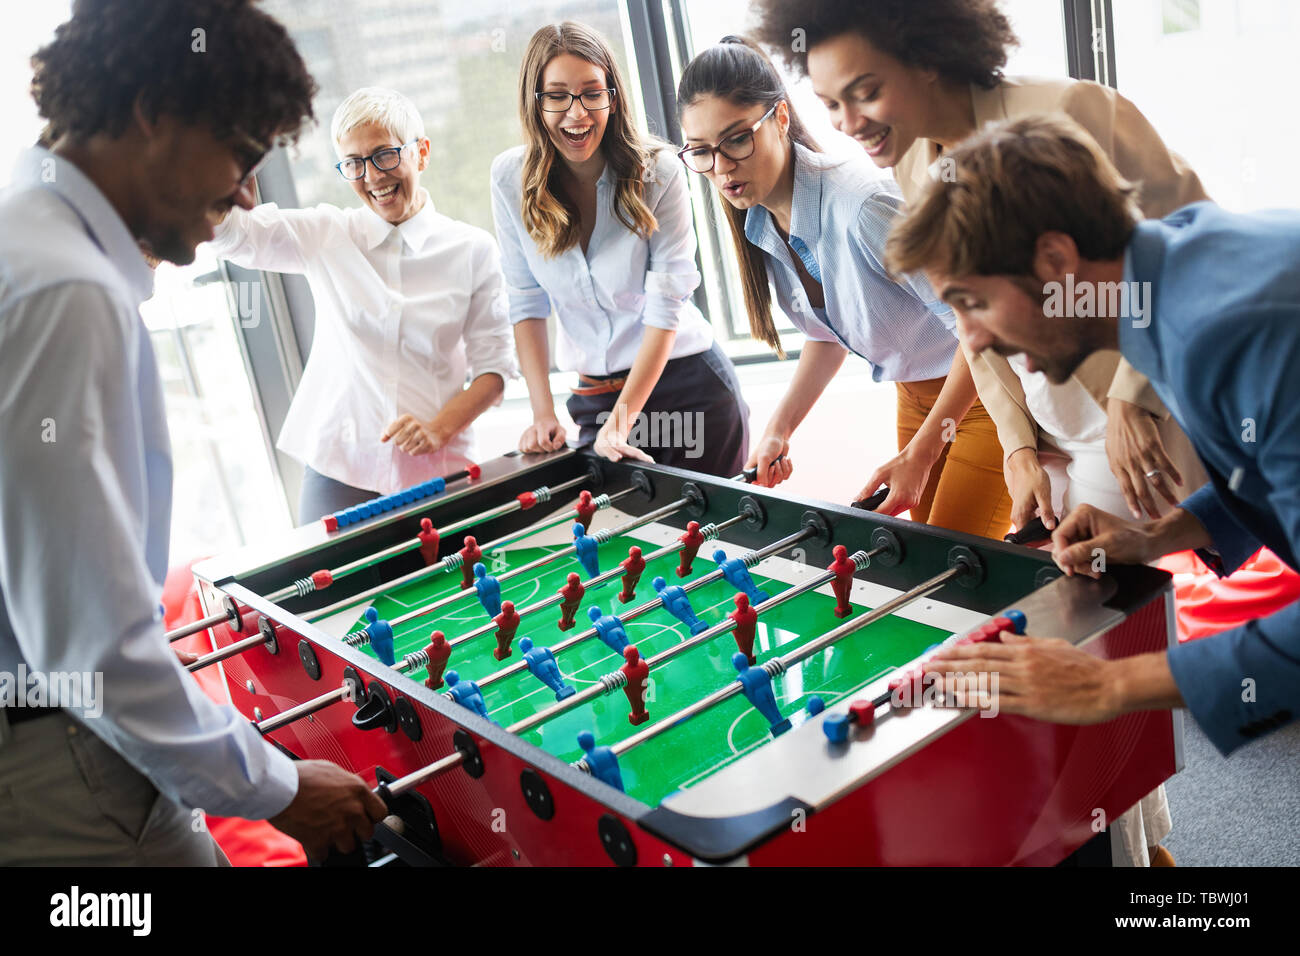 La gente de negocios con gran tiempo juntos.colegas jugando fútbol en la oficina. Foto de stock